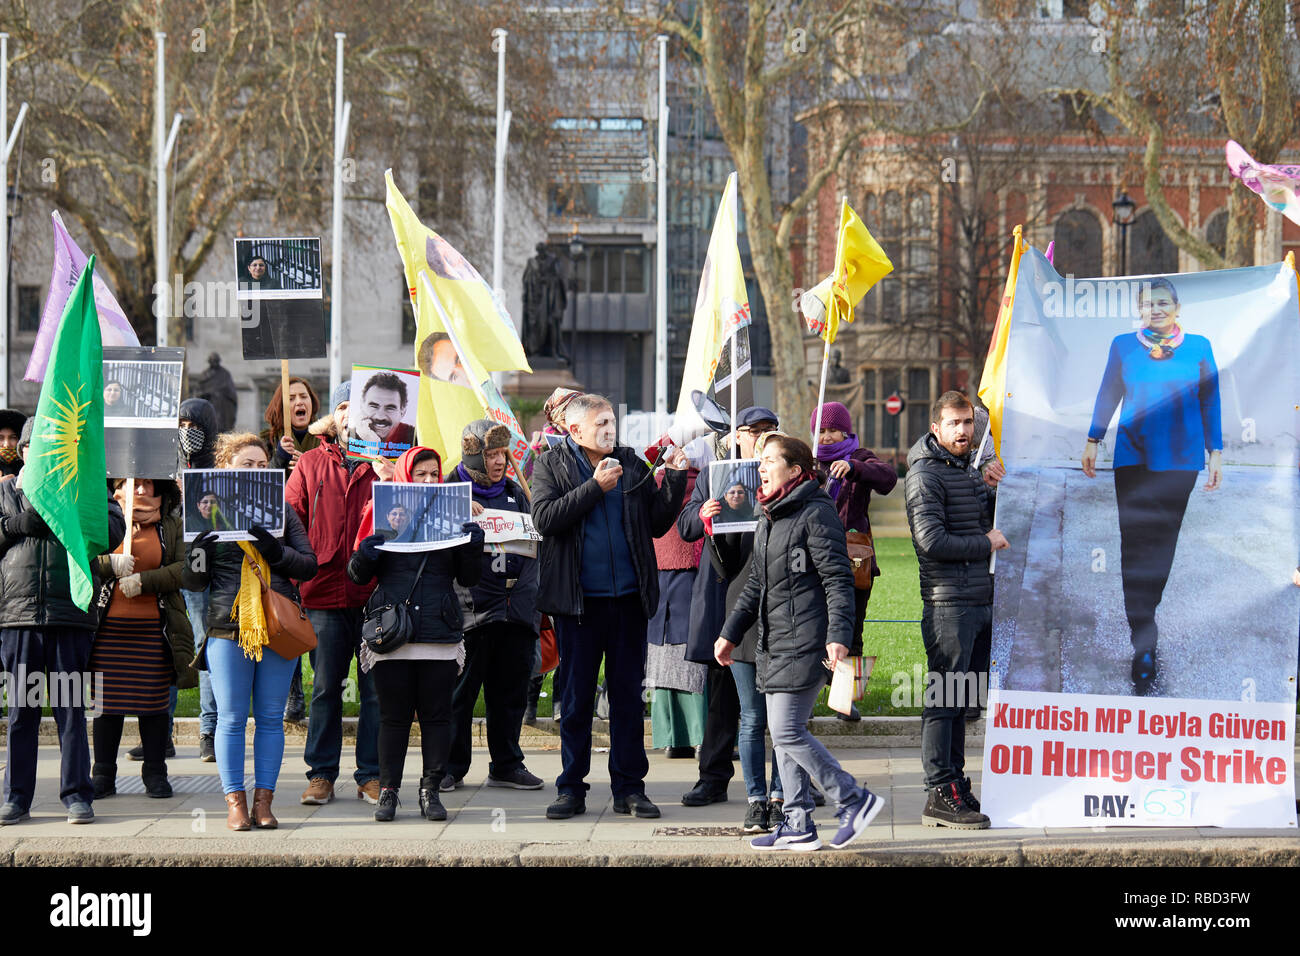 Londres, UK - 9 janvier, 2019 : Des manifestants à l'extérieur de Kurdes Parlement à l'appui de MP Leyla Guven qui a été en grève de la faim depuis le 7 nov. à l'appui du leader kurde Abdullah Ocalan. Crédit : Kevin J. Frost/Alamy Live News Banque D'Images